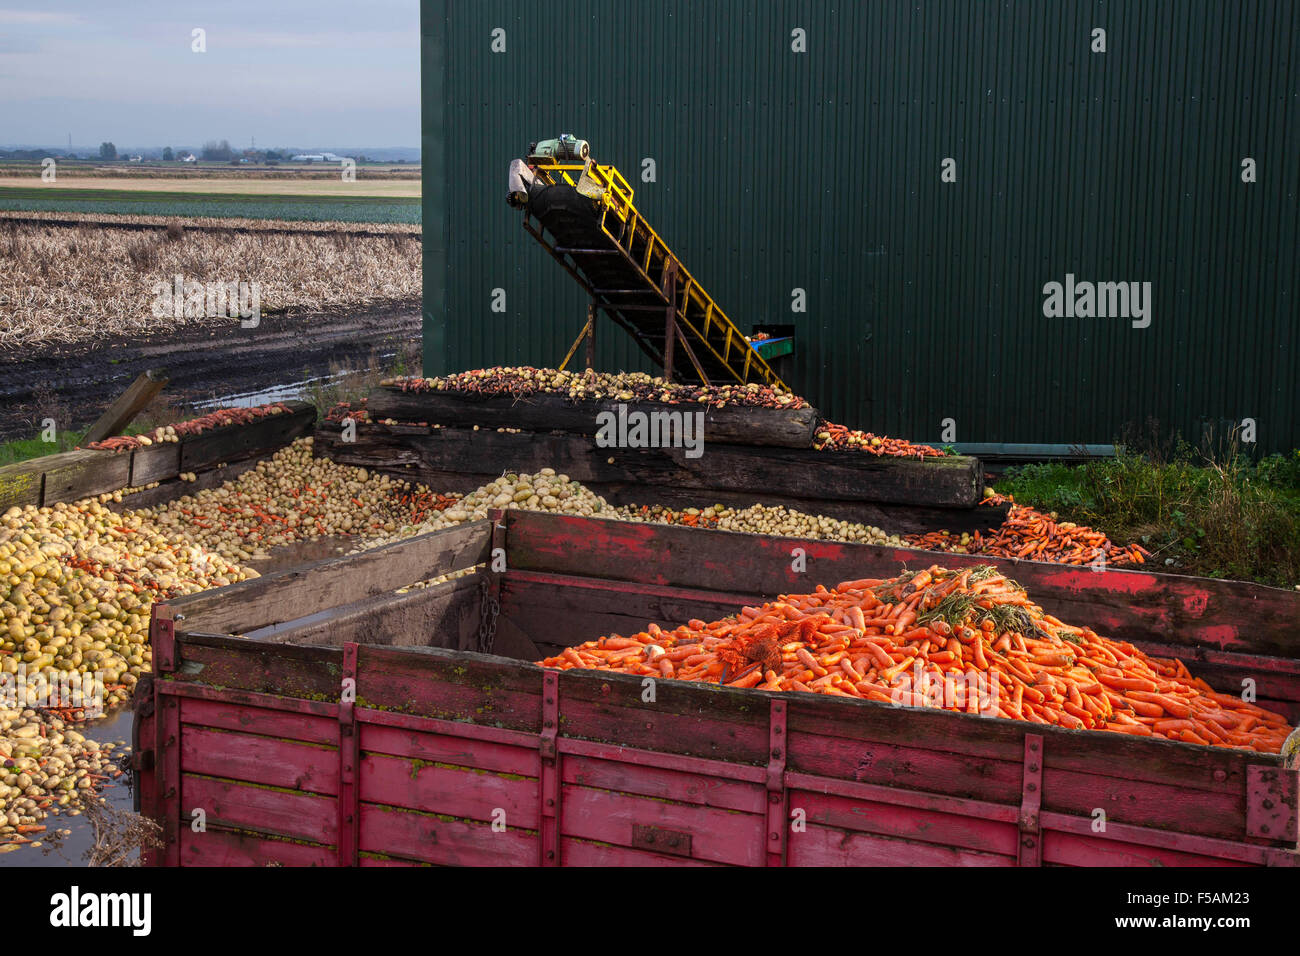 Légumes wonky rejetés à Burscough, Lancashire, Royaume-Uni octobre 2015.La réduction des déchets alimentaires pourrait aider à nourrir les affamés du monde, déclare le professeur Per Pinsjup-Andersen, chef d'un groupe d'experts indépendant qui conseille l'Organisation des Nations Unies pour l'alimentation et l'agriculture sur la façon de s'attaquer au problème.Dans une série de programmes, la BBC met également en lumière la montagne de déchets alimentaires qui sont générés sur les fermes britanniques en raison des normes cosmétiques strictes des supermarchés.Crédit : Cernan Elias/Alay Live News Banque D'Images